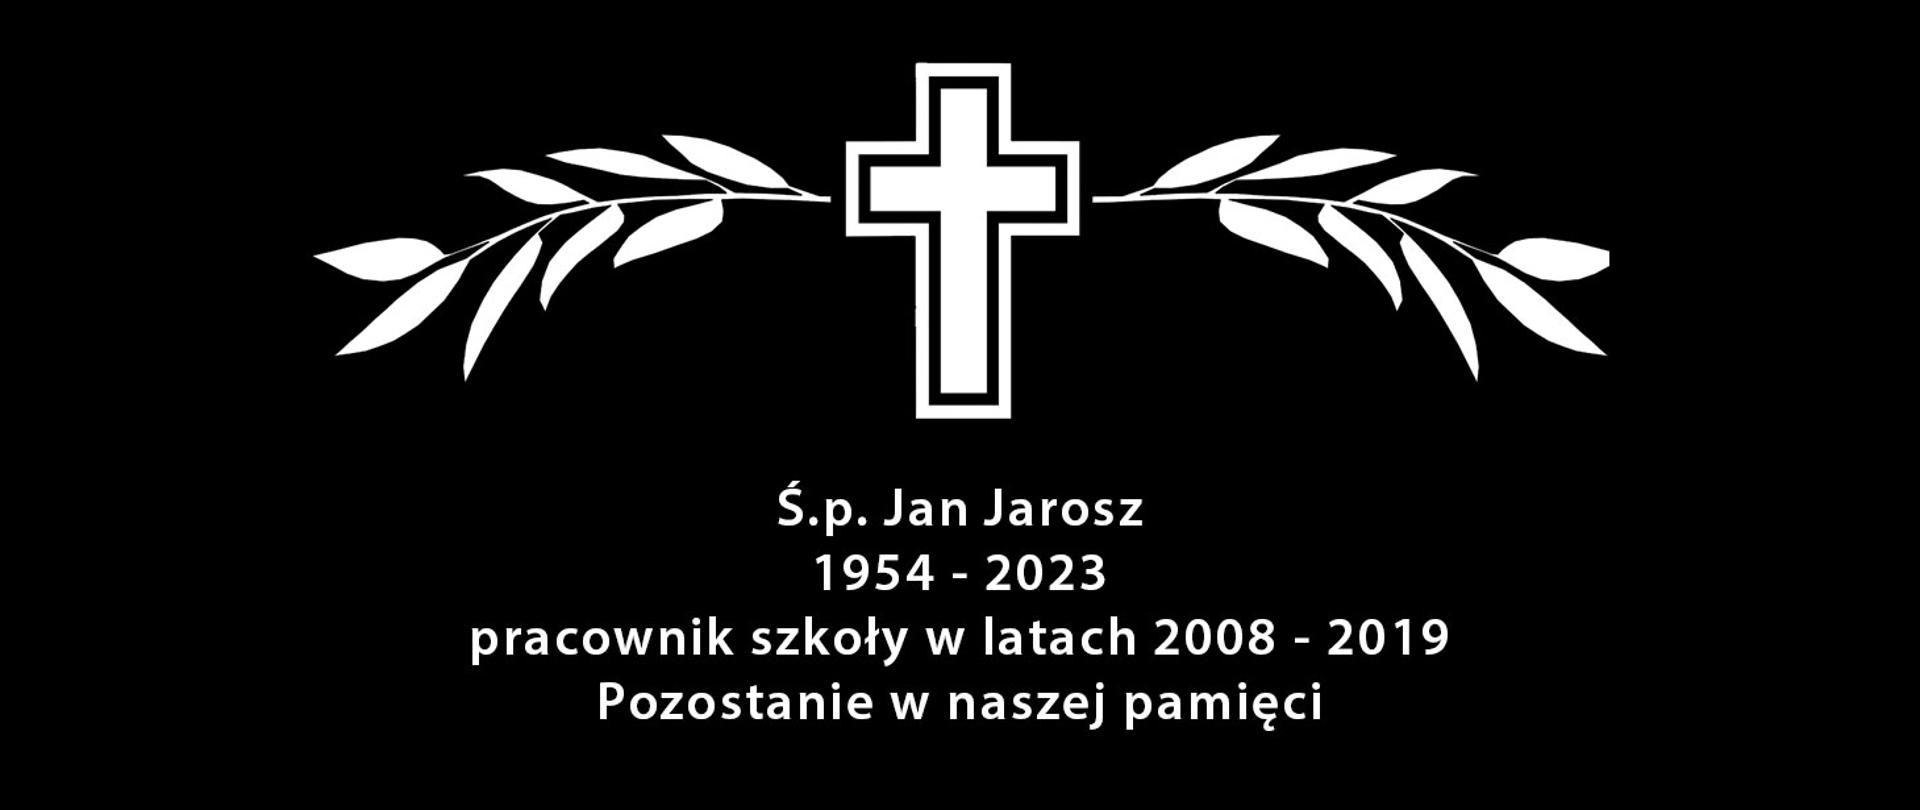 Grafika przedstawiająca biały krzyż z napisem pod spodem: "Ś.p. Jan Jarosz 1954 - 2023 pracownik szkoły w latach 01.01.2008 -31.01.2019 Pozostanie w naszej pamięci" na czarnym tle.